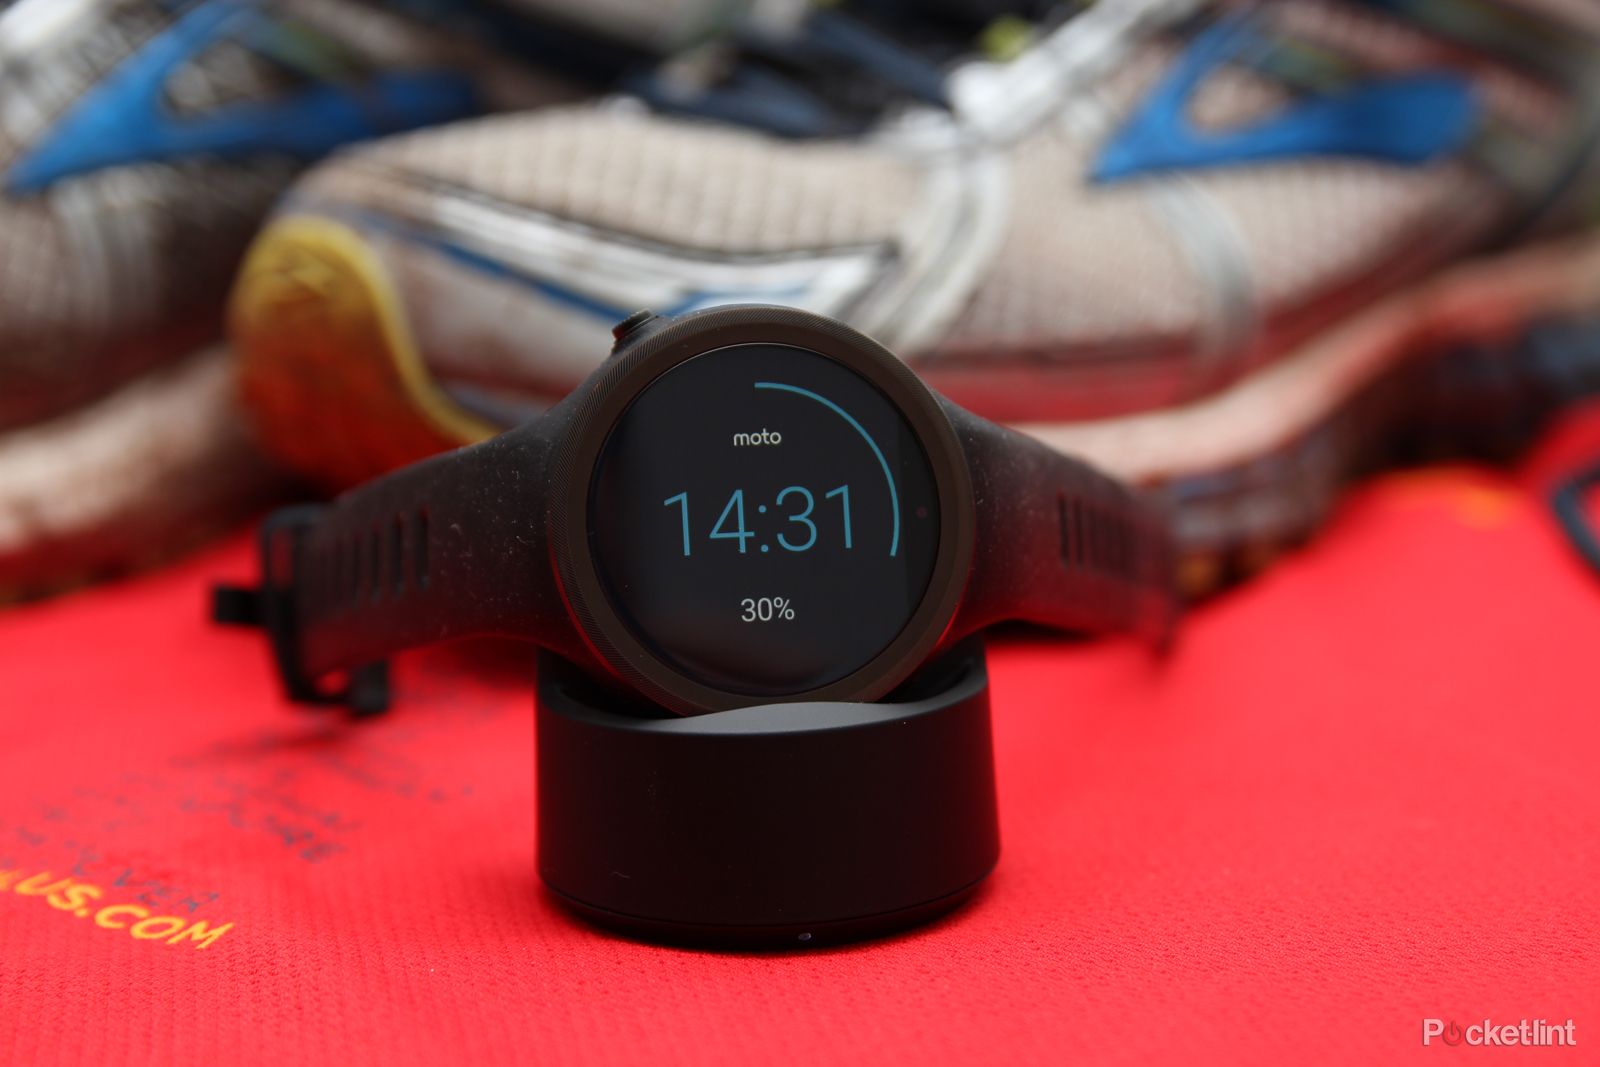 Motorola apresenta o Moto 360, seu relógio inteligente com Android